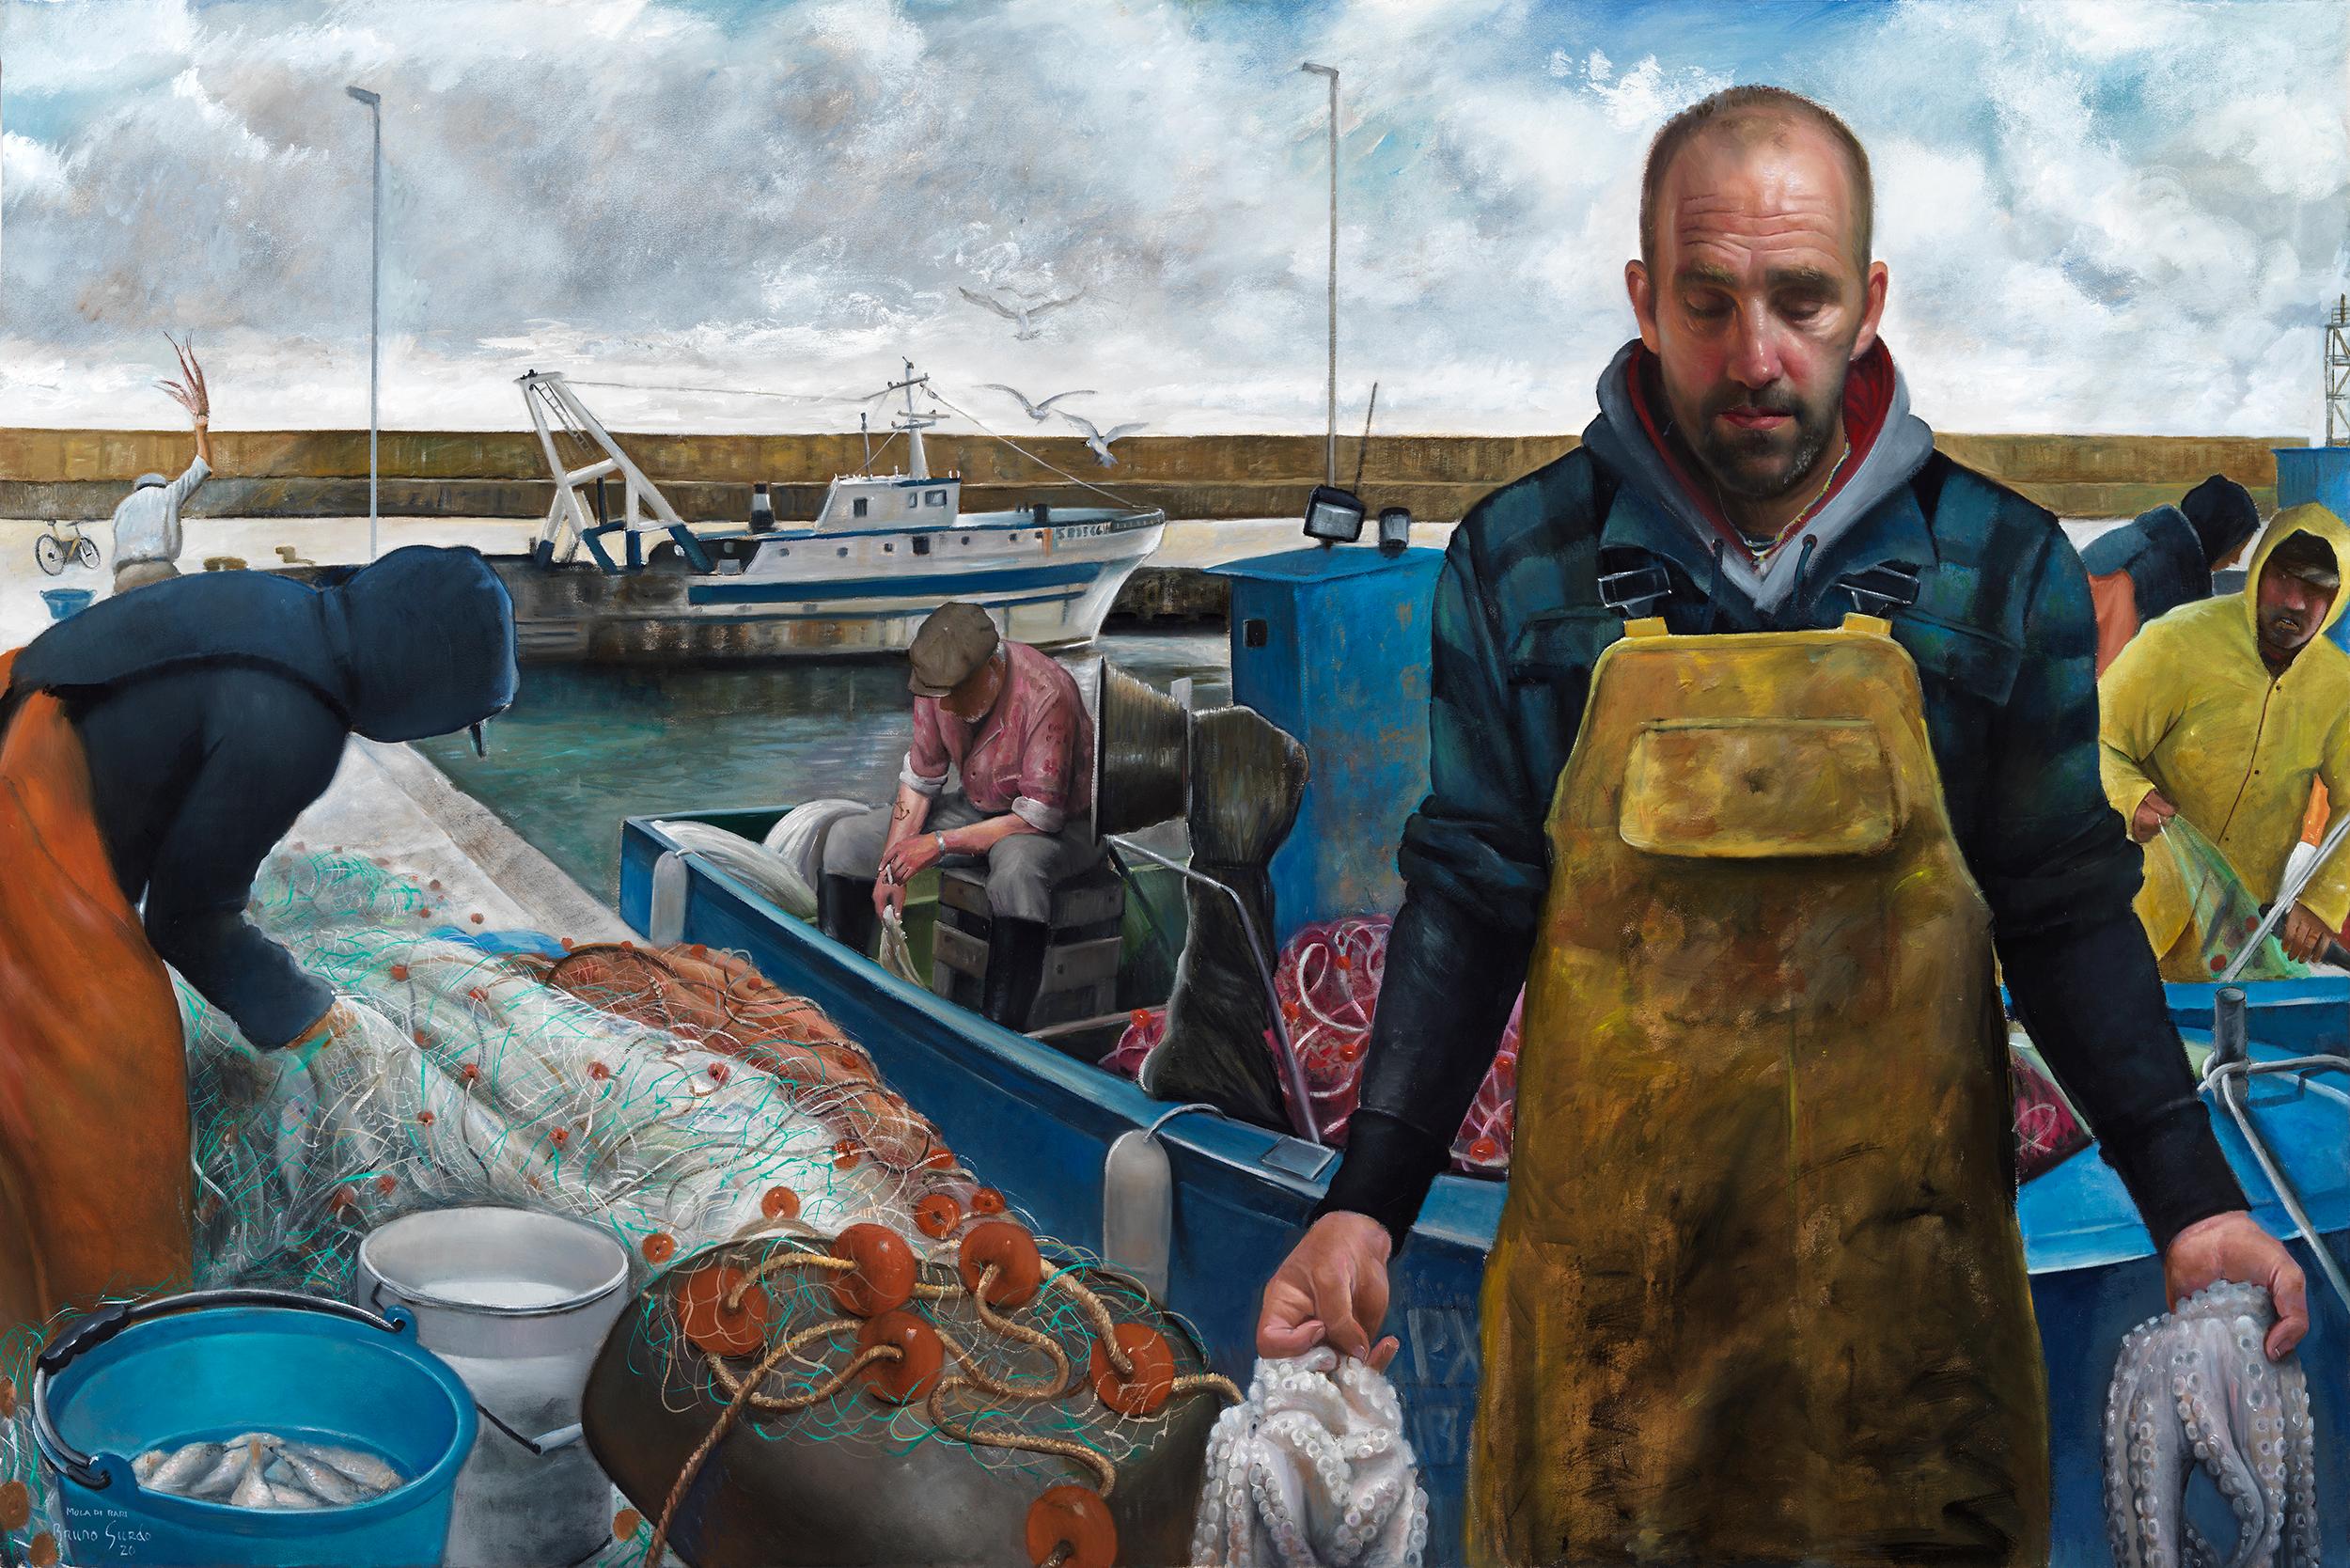 Animal Painting Bruno Surdo - Le pêcheur de Mola di Bari, Puglia, Italie, peinture à l'huile à grande échelle, encadrée